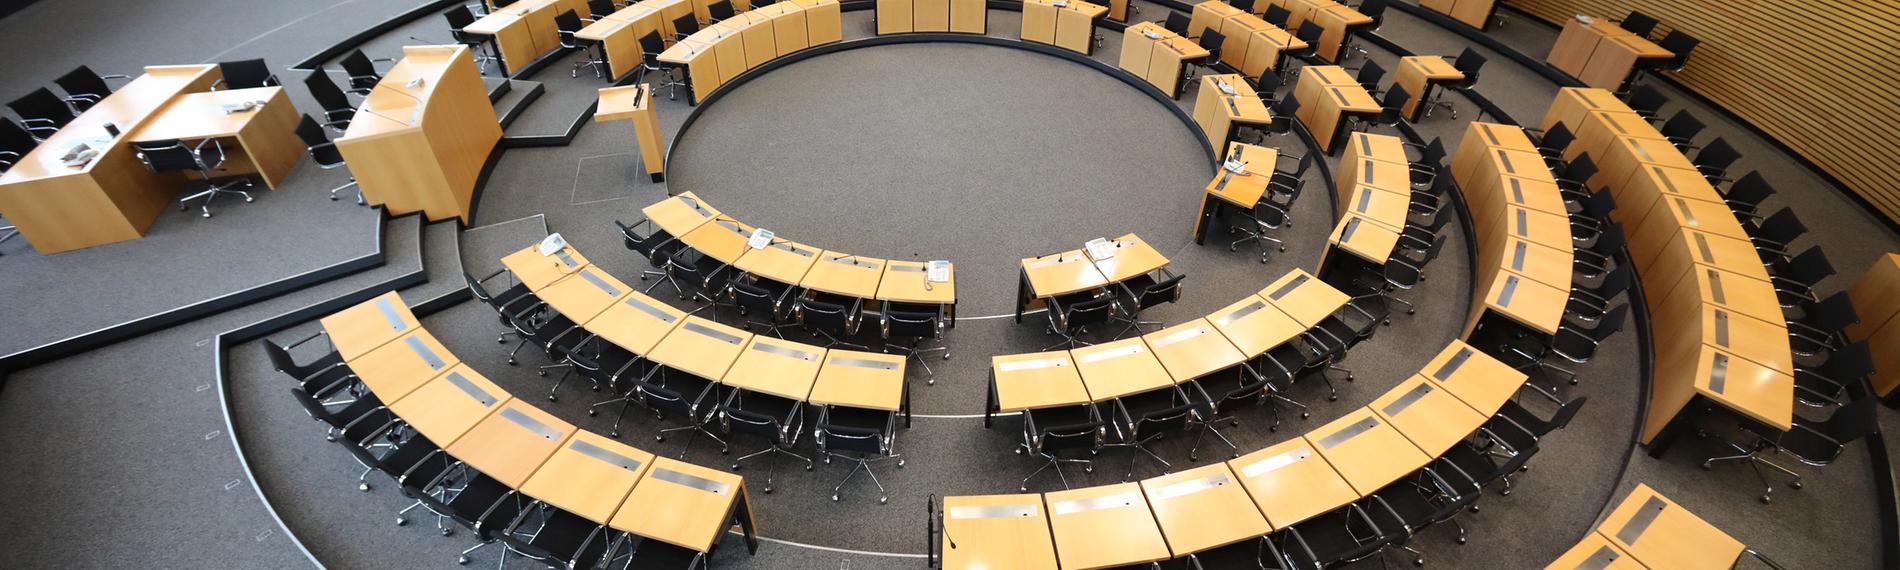 Thüringen, Erfurt: Leere Sitze sind im Plenarsaal des Thüringer Landtages zu sehen.